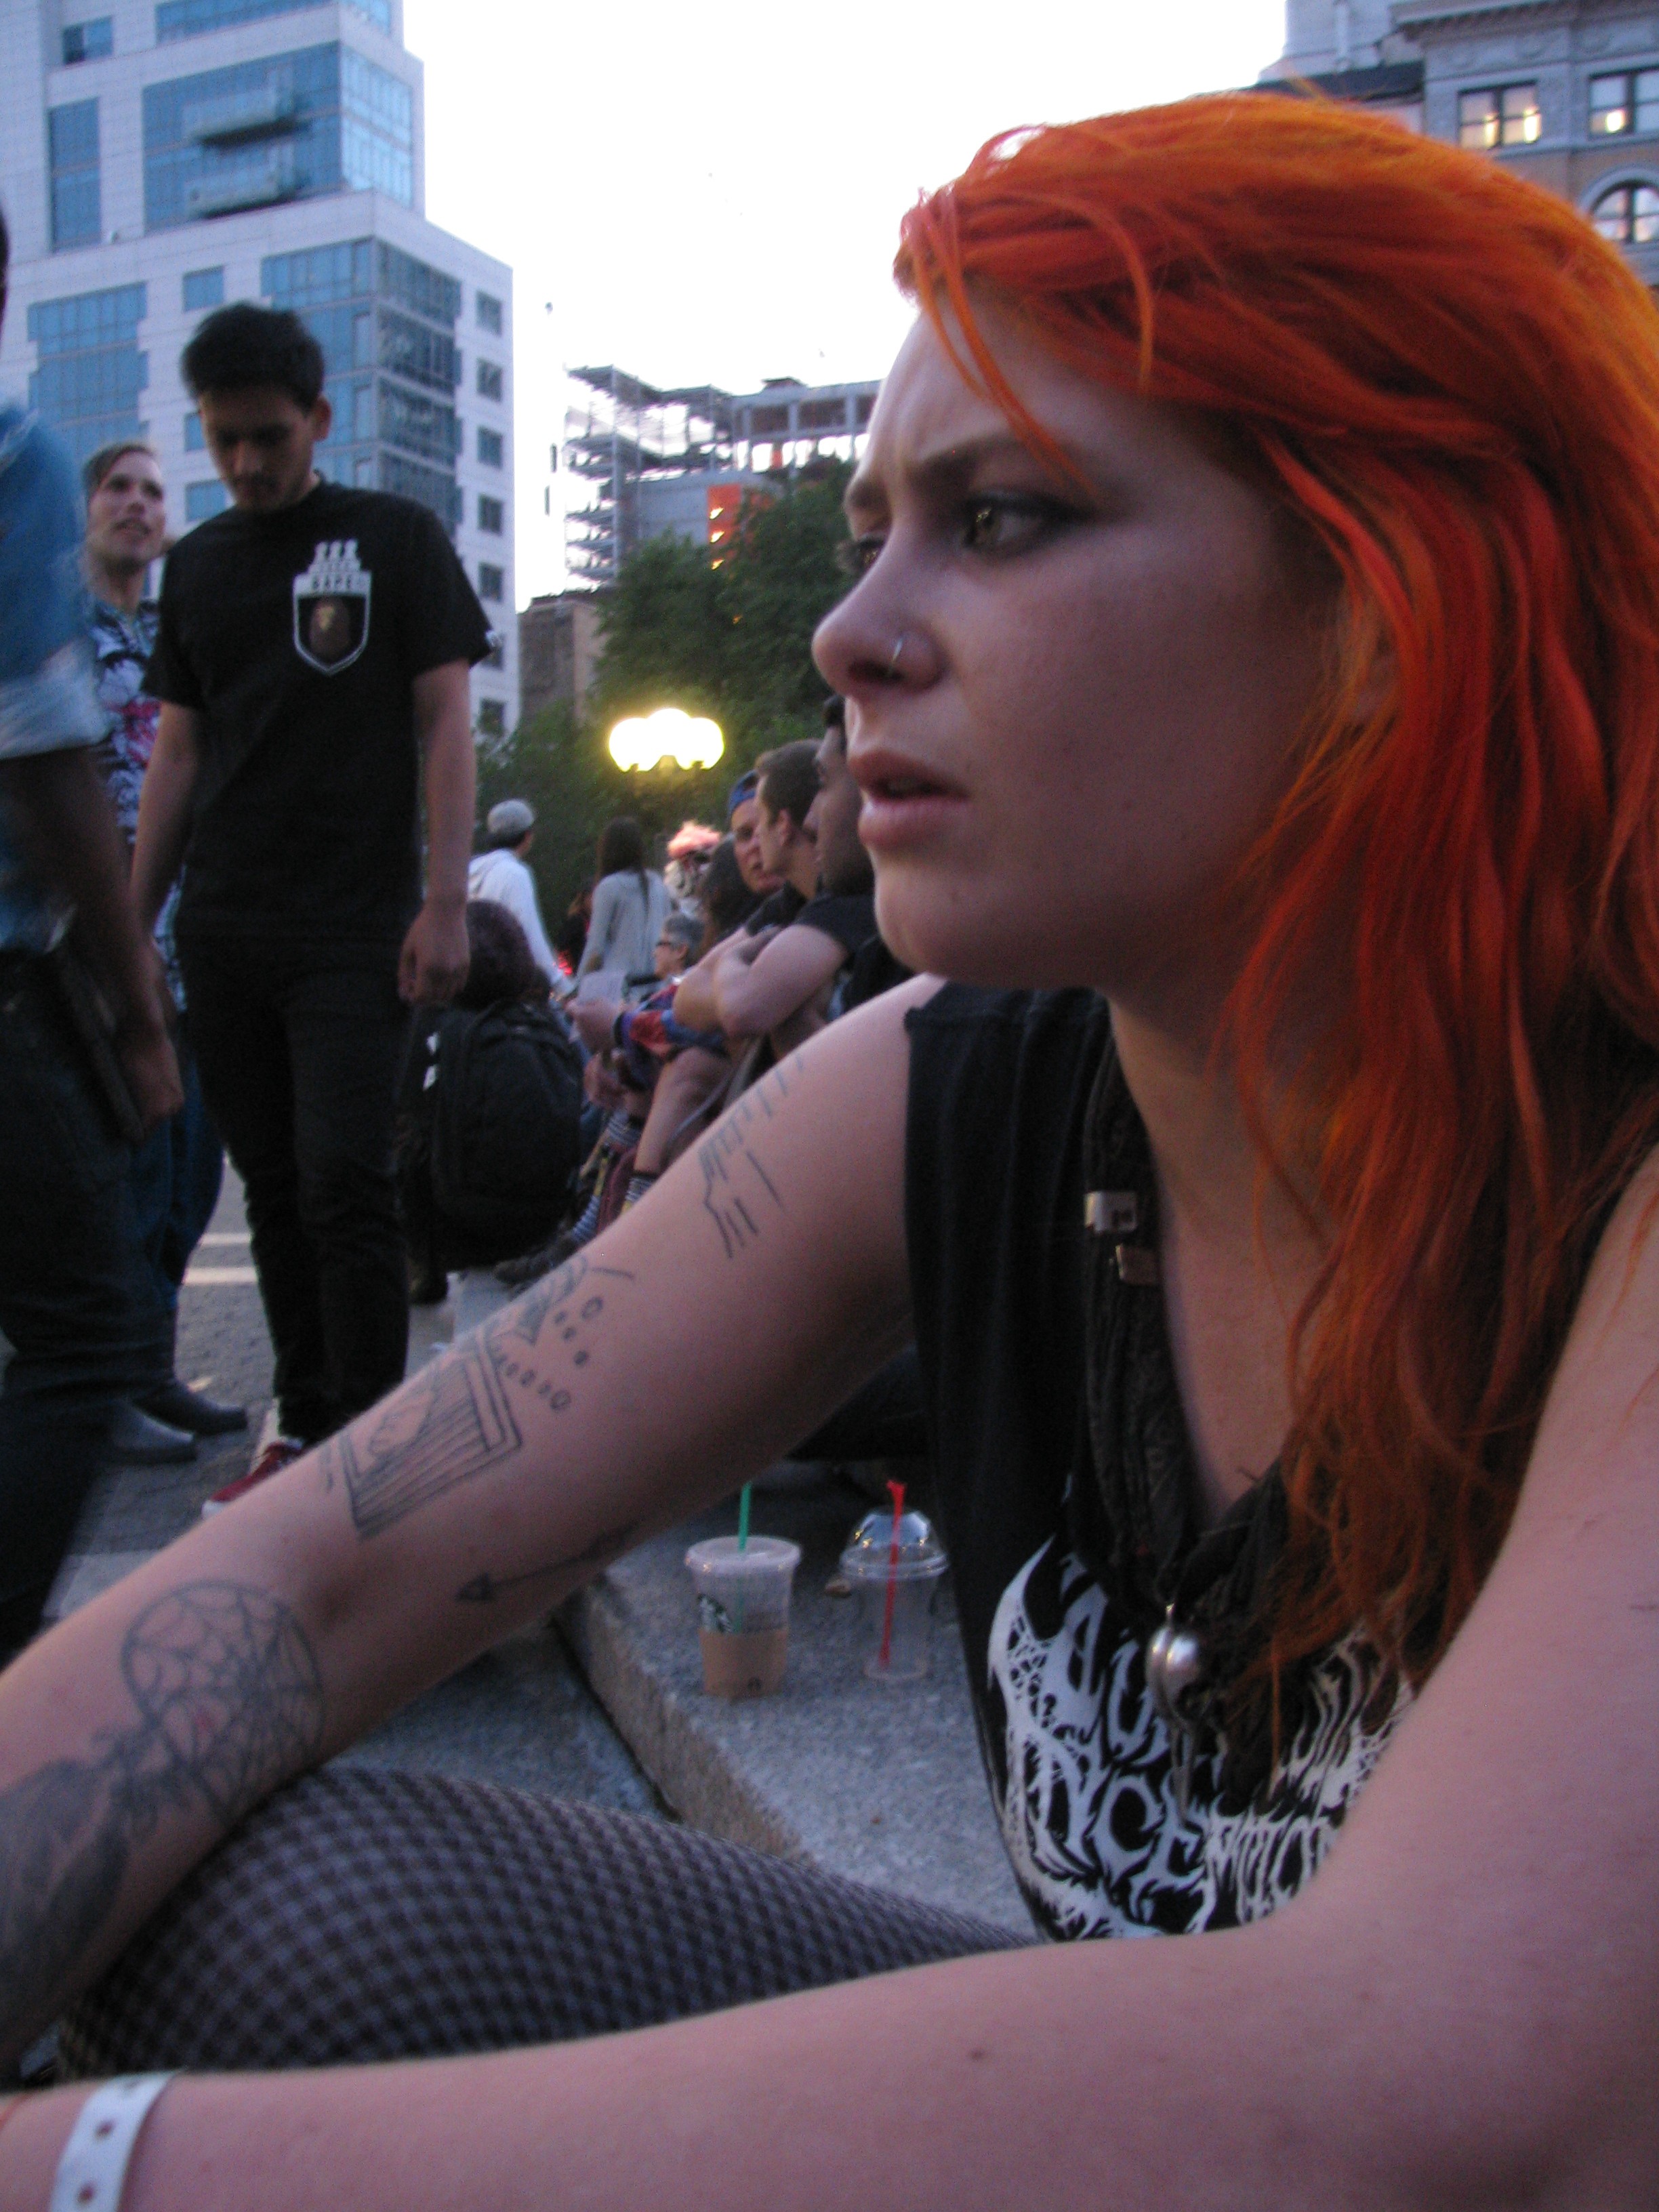 punk rock girl with orange hair